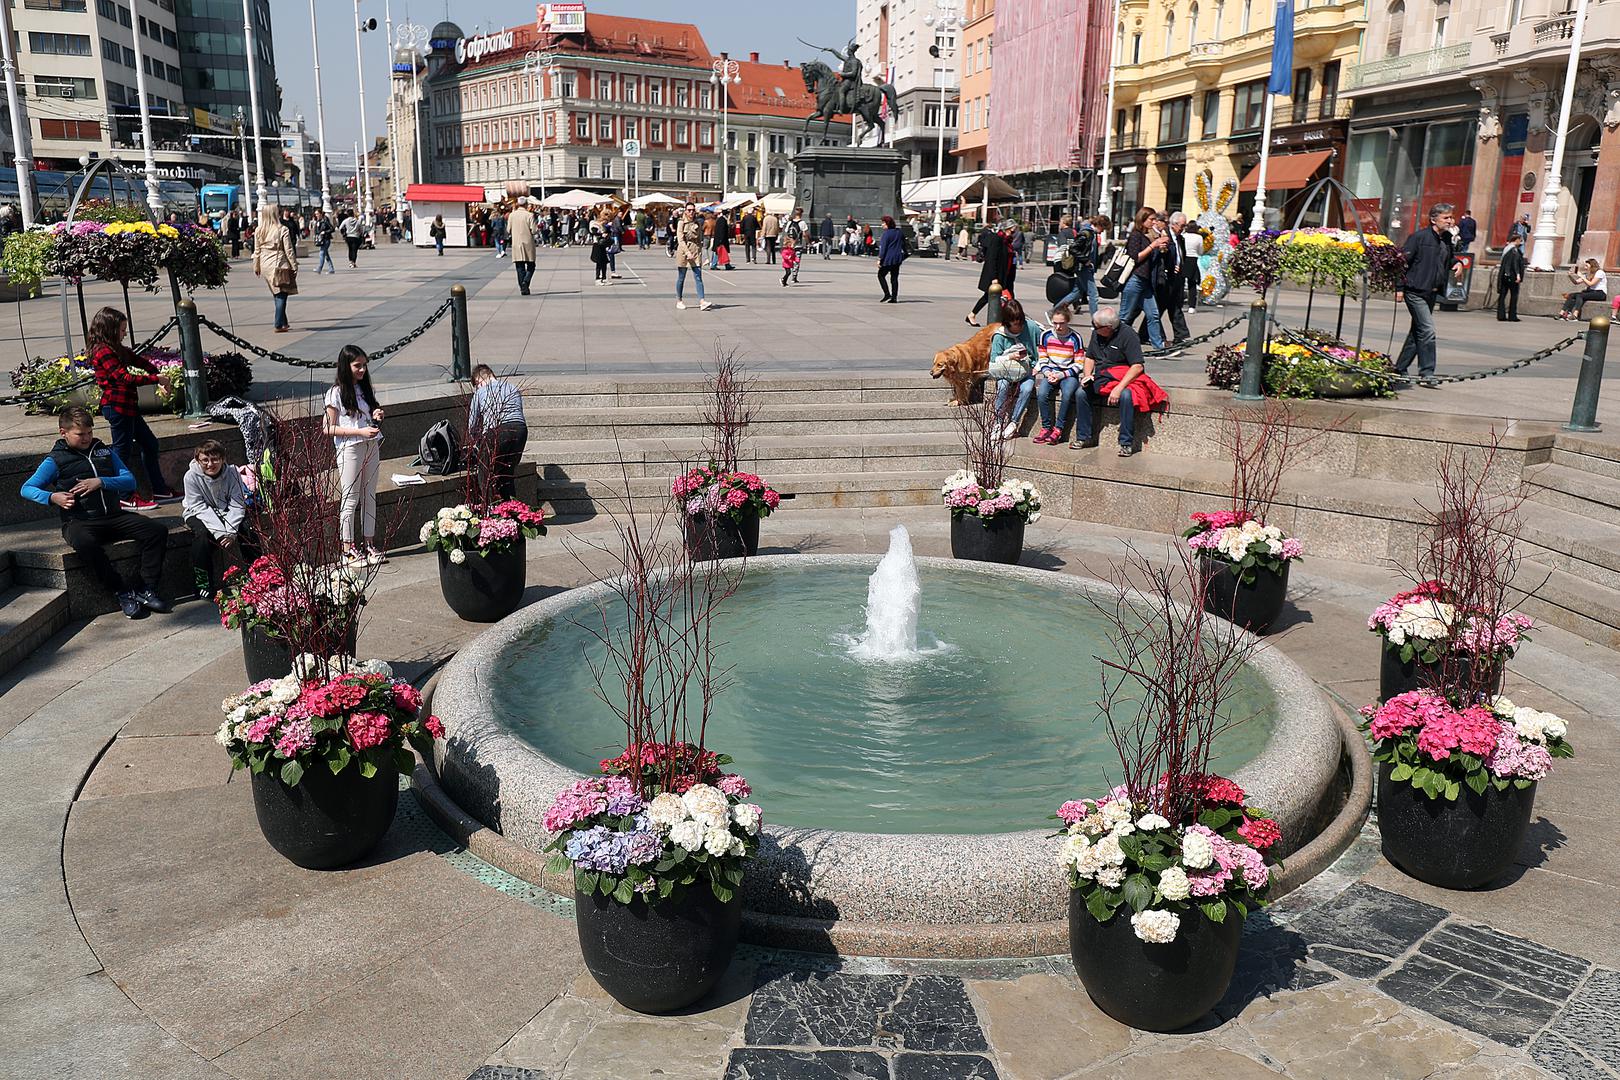 Oko najpoznatije zagrebačke fontane Manduševac postavljeno je prekrasno proljetno cvijeće.